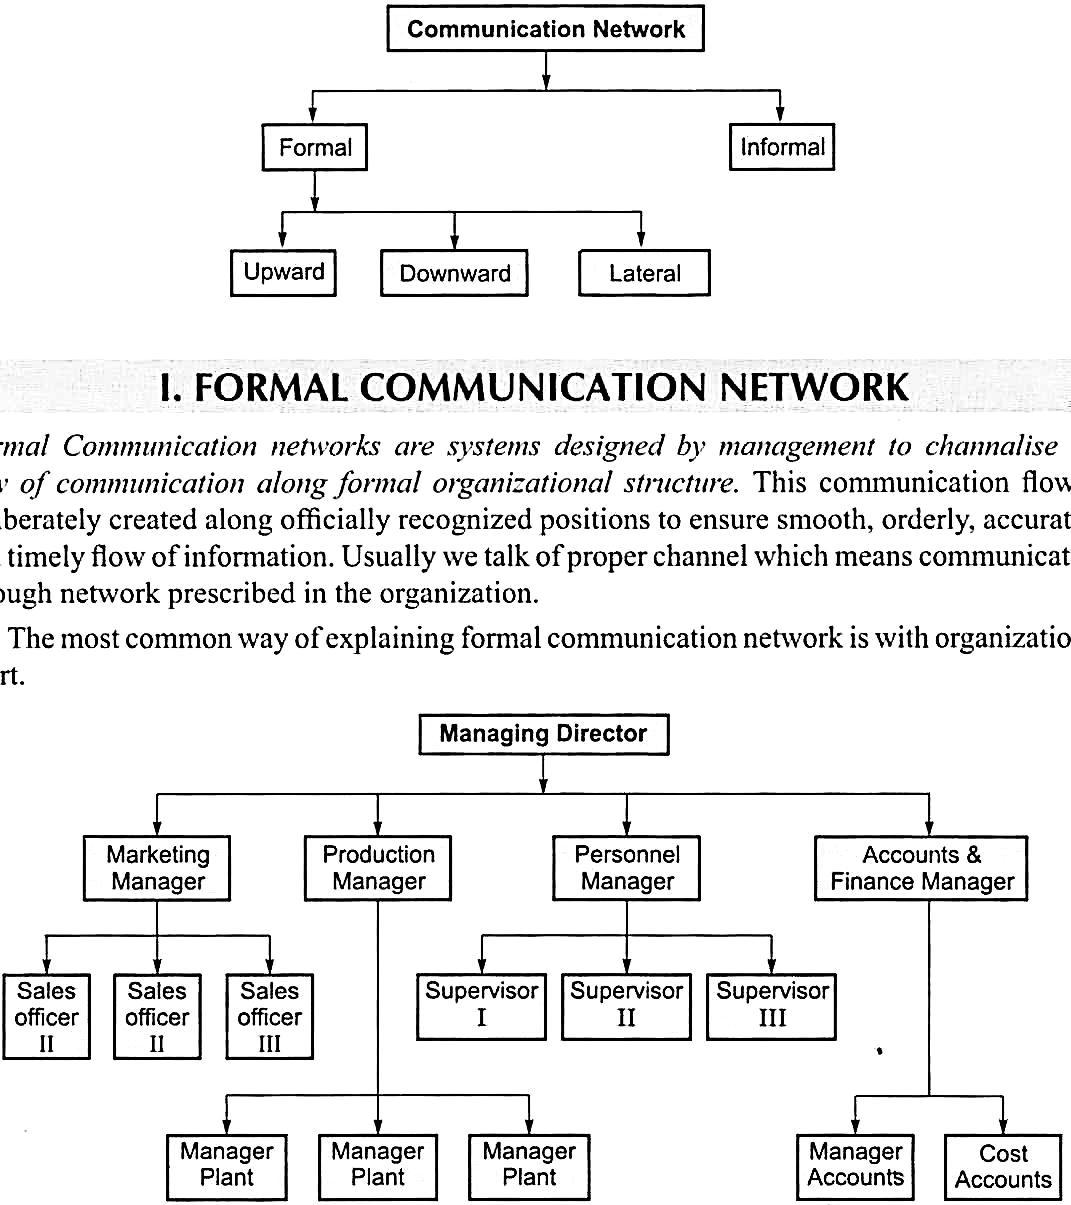 Z:\2. Proofread\Business Communication (Varinder Kumar) - Working On (Sushree)\Figure\006.jpg